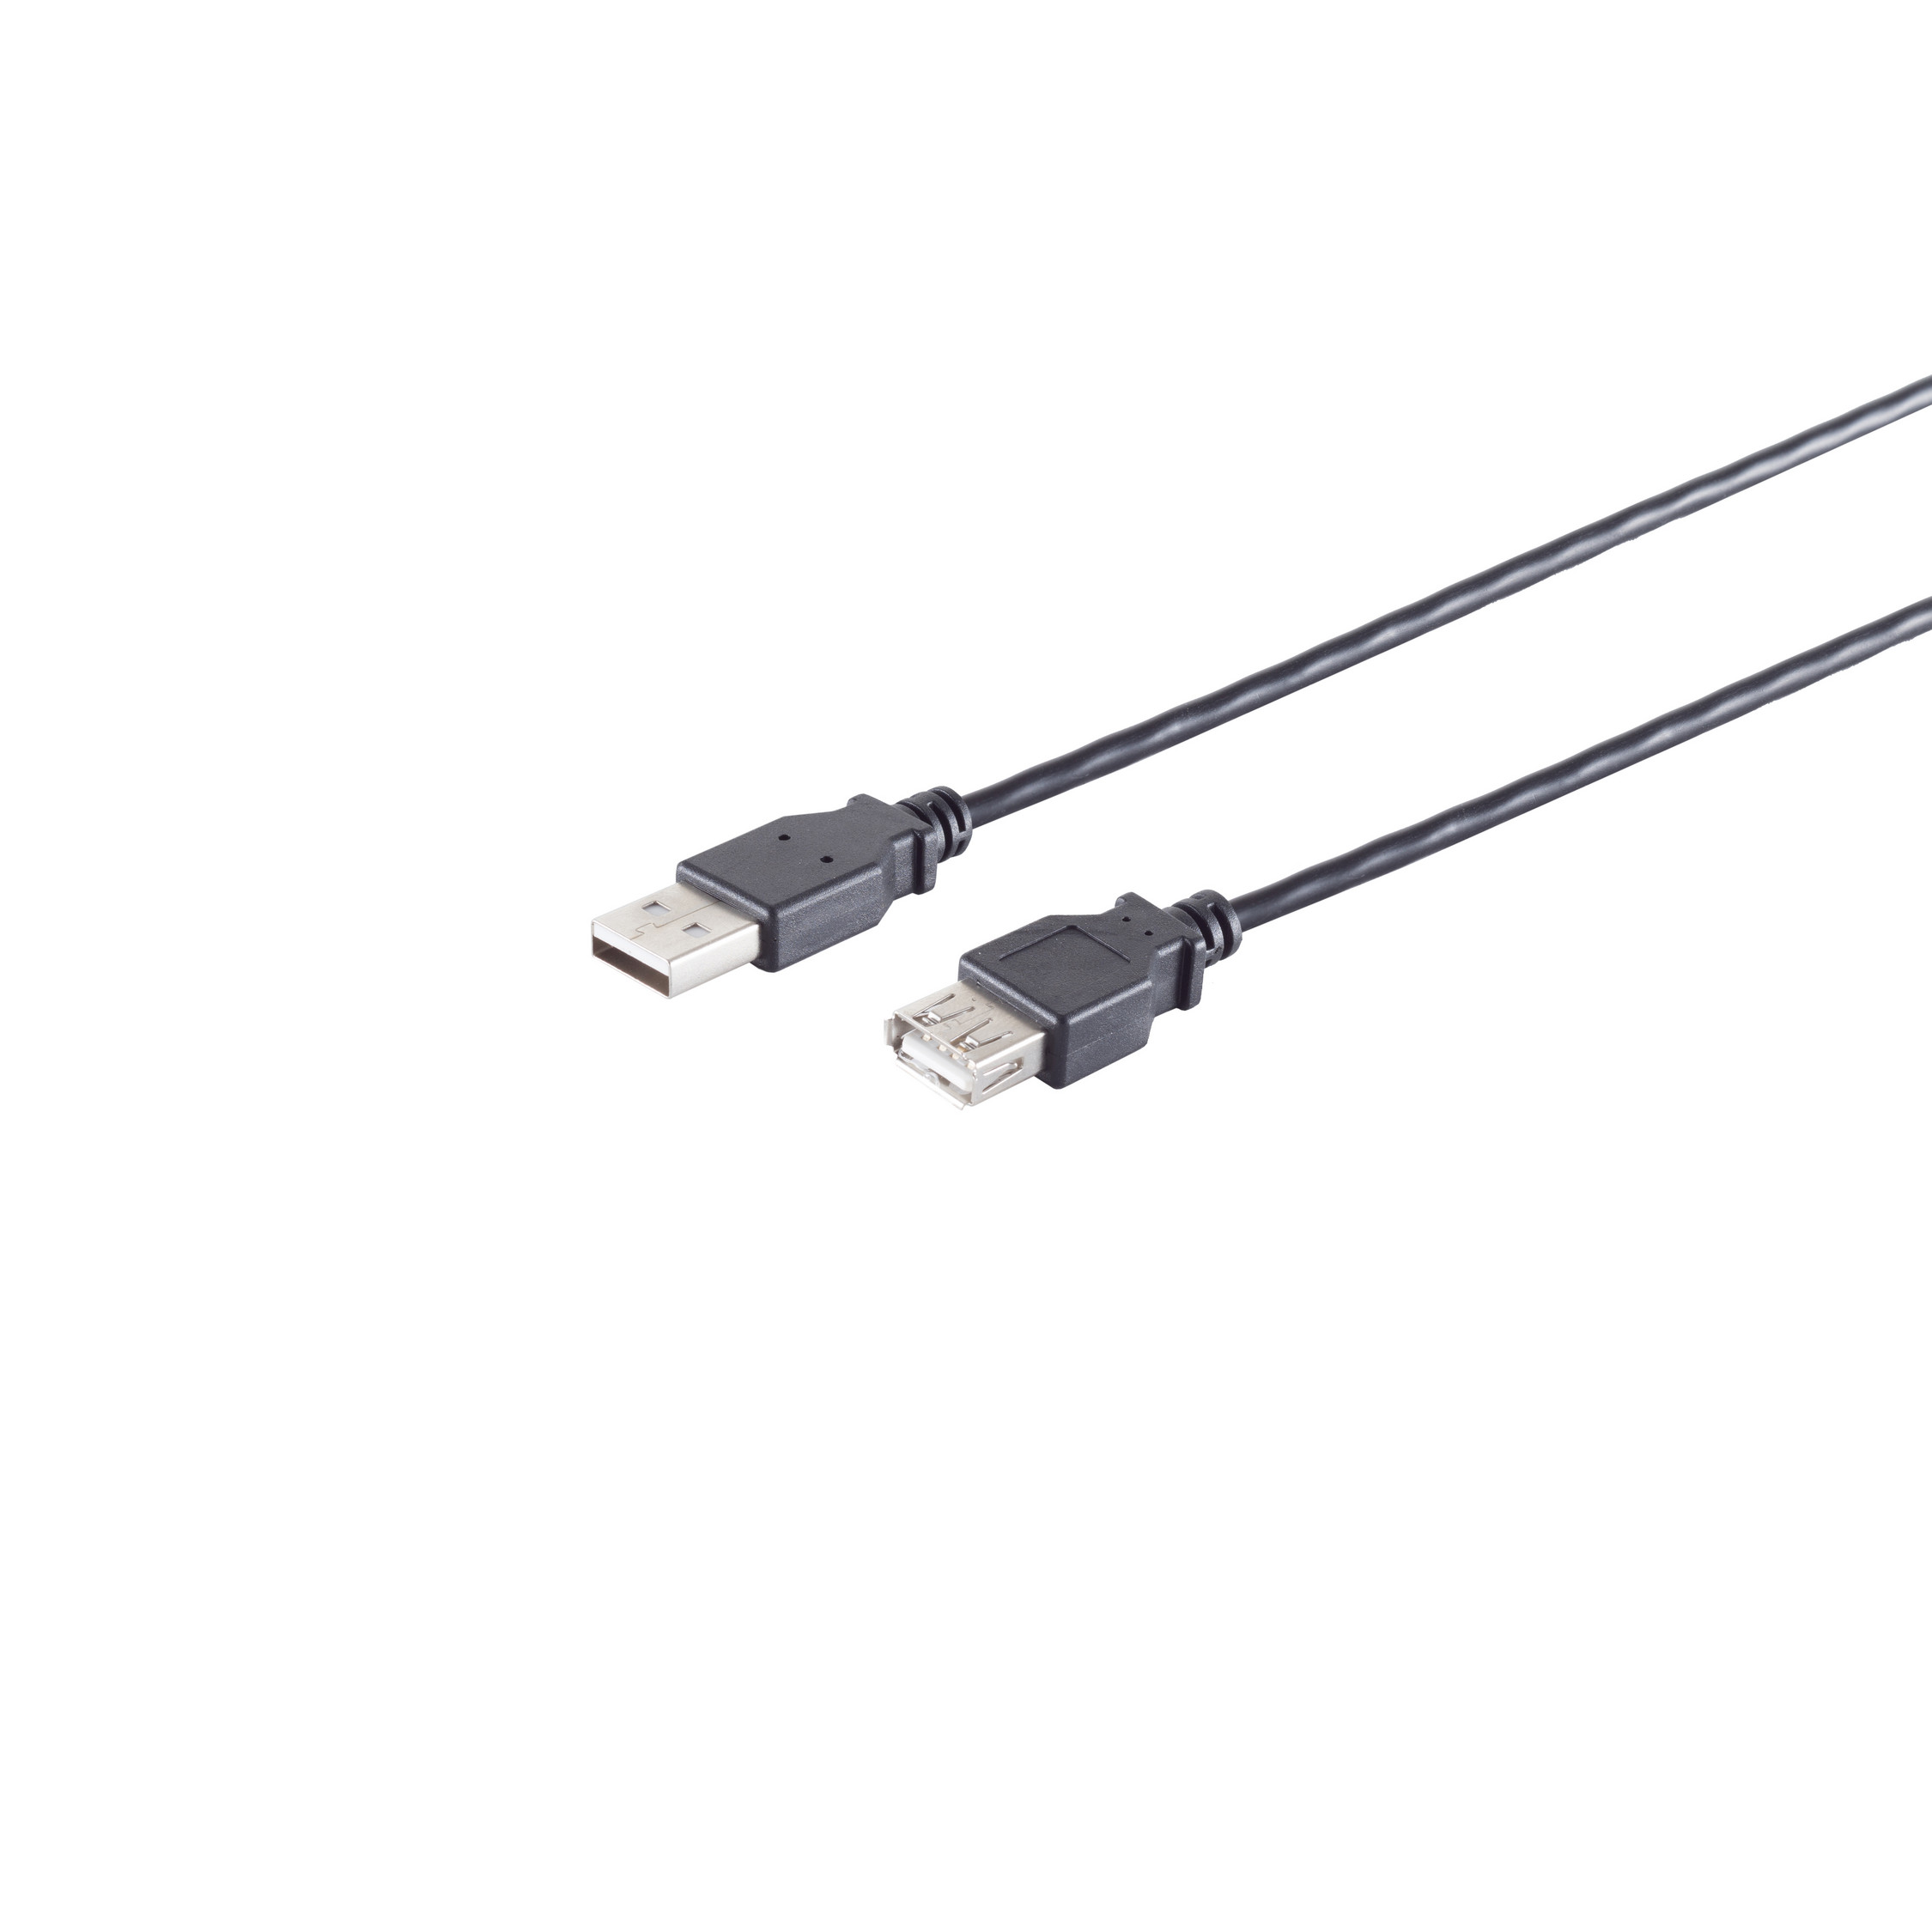 S/CONN MAXIMUM CONNECTIVITY Verlängerung, 2.0, 2.0 USB Kabel Speed schwarz, USB A/A Buchse, 3m High USB